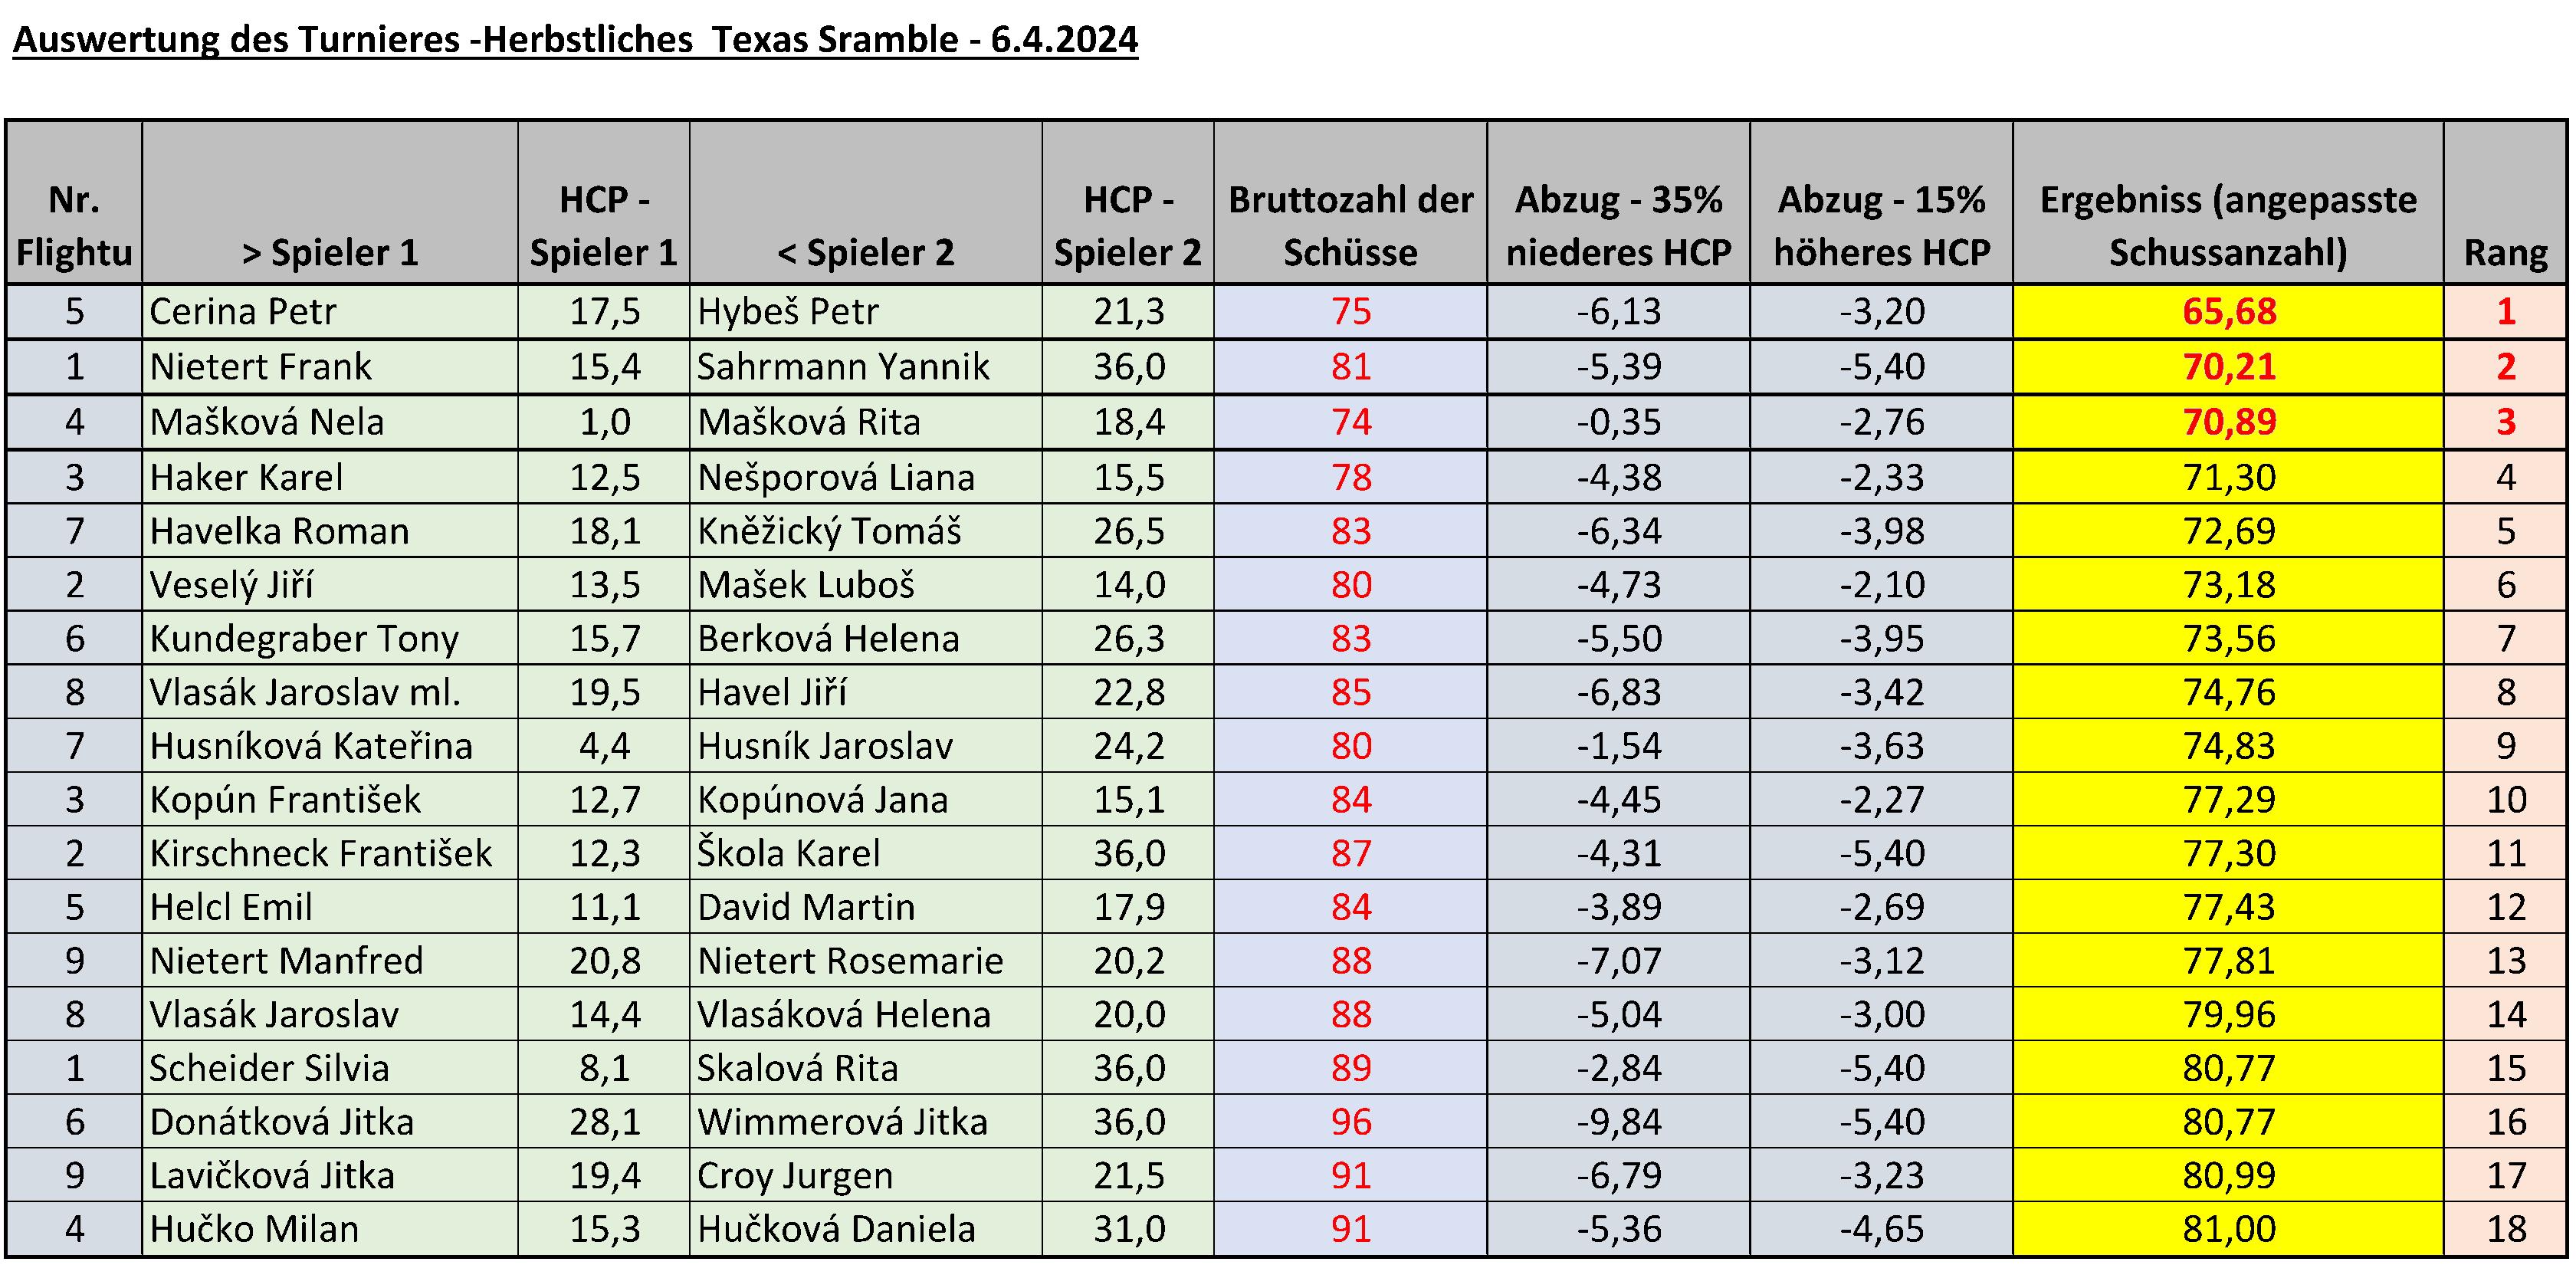 Auswertung des Turnieres Herbstliches Texas scramble 2024